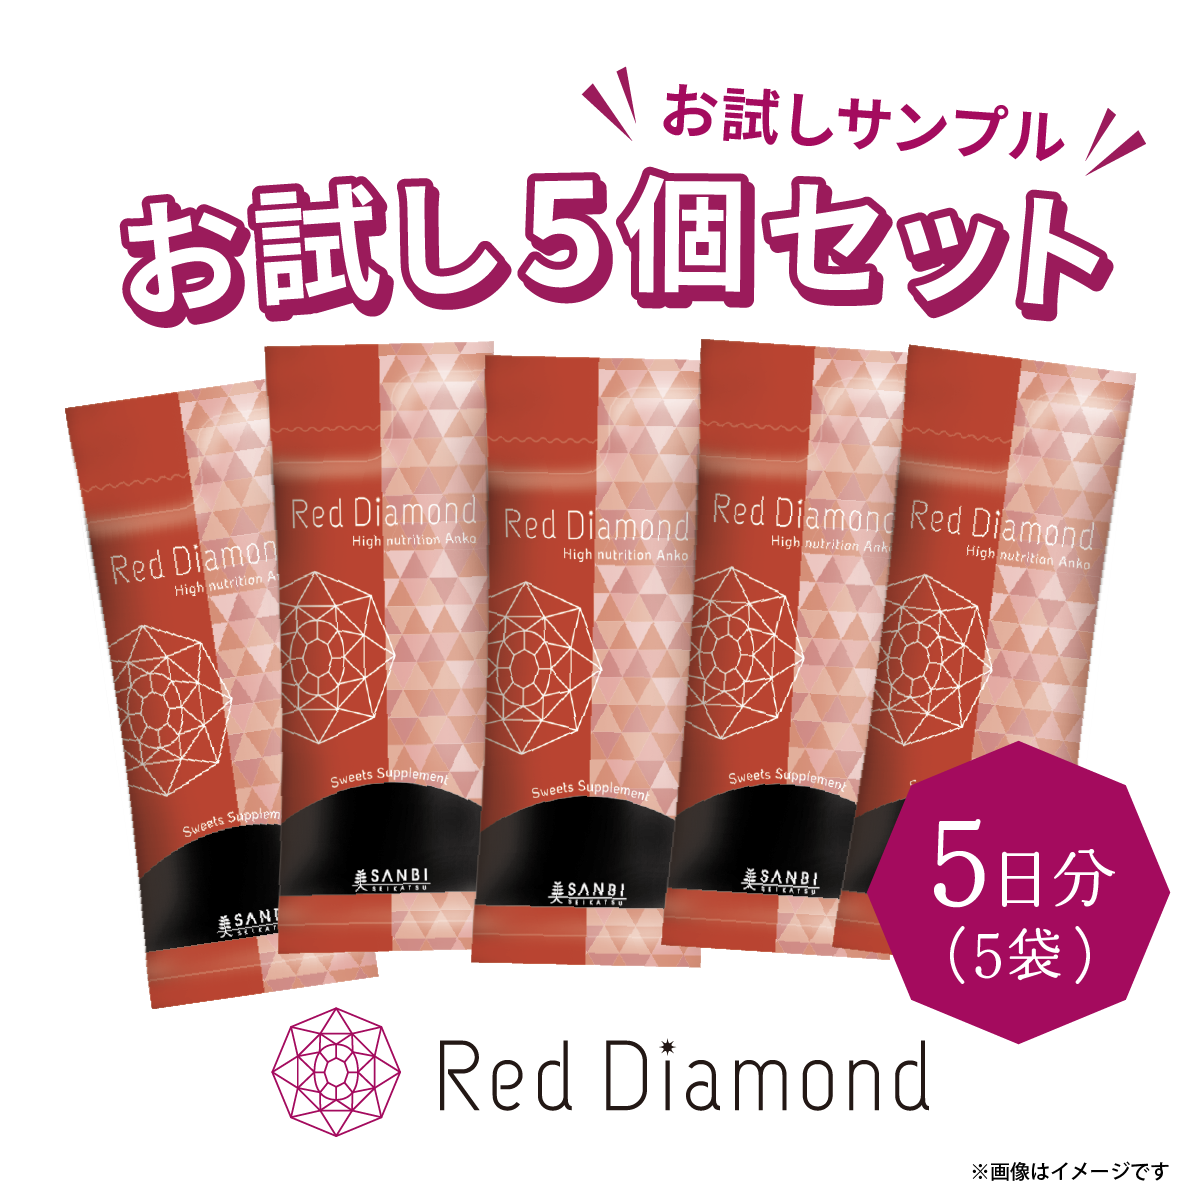 【お試し購入】Red Diamond｜1袋30g×5セット